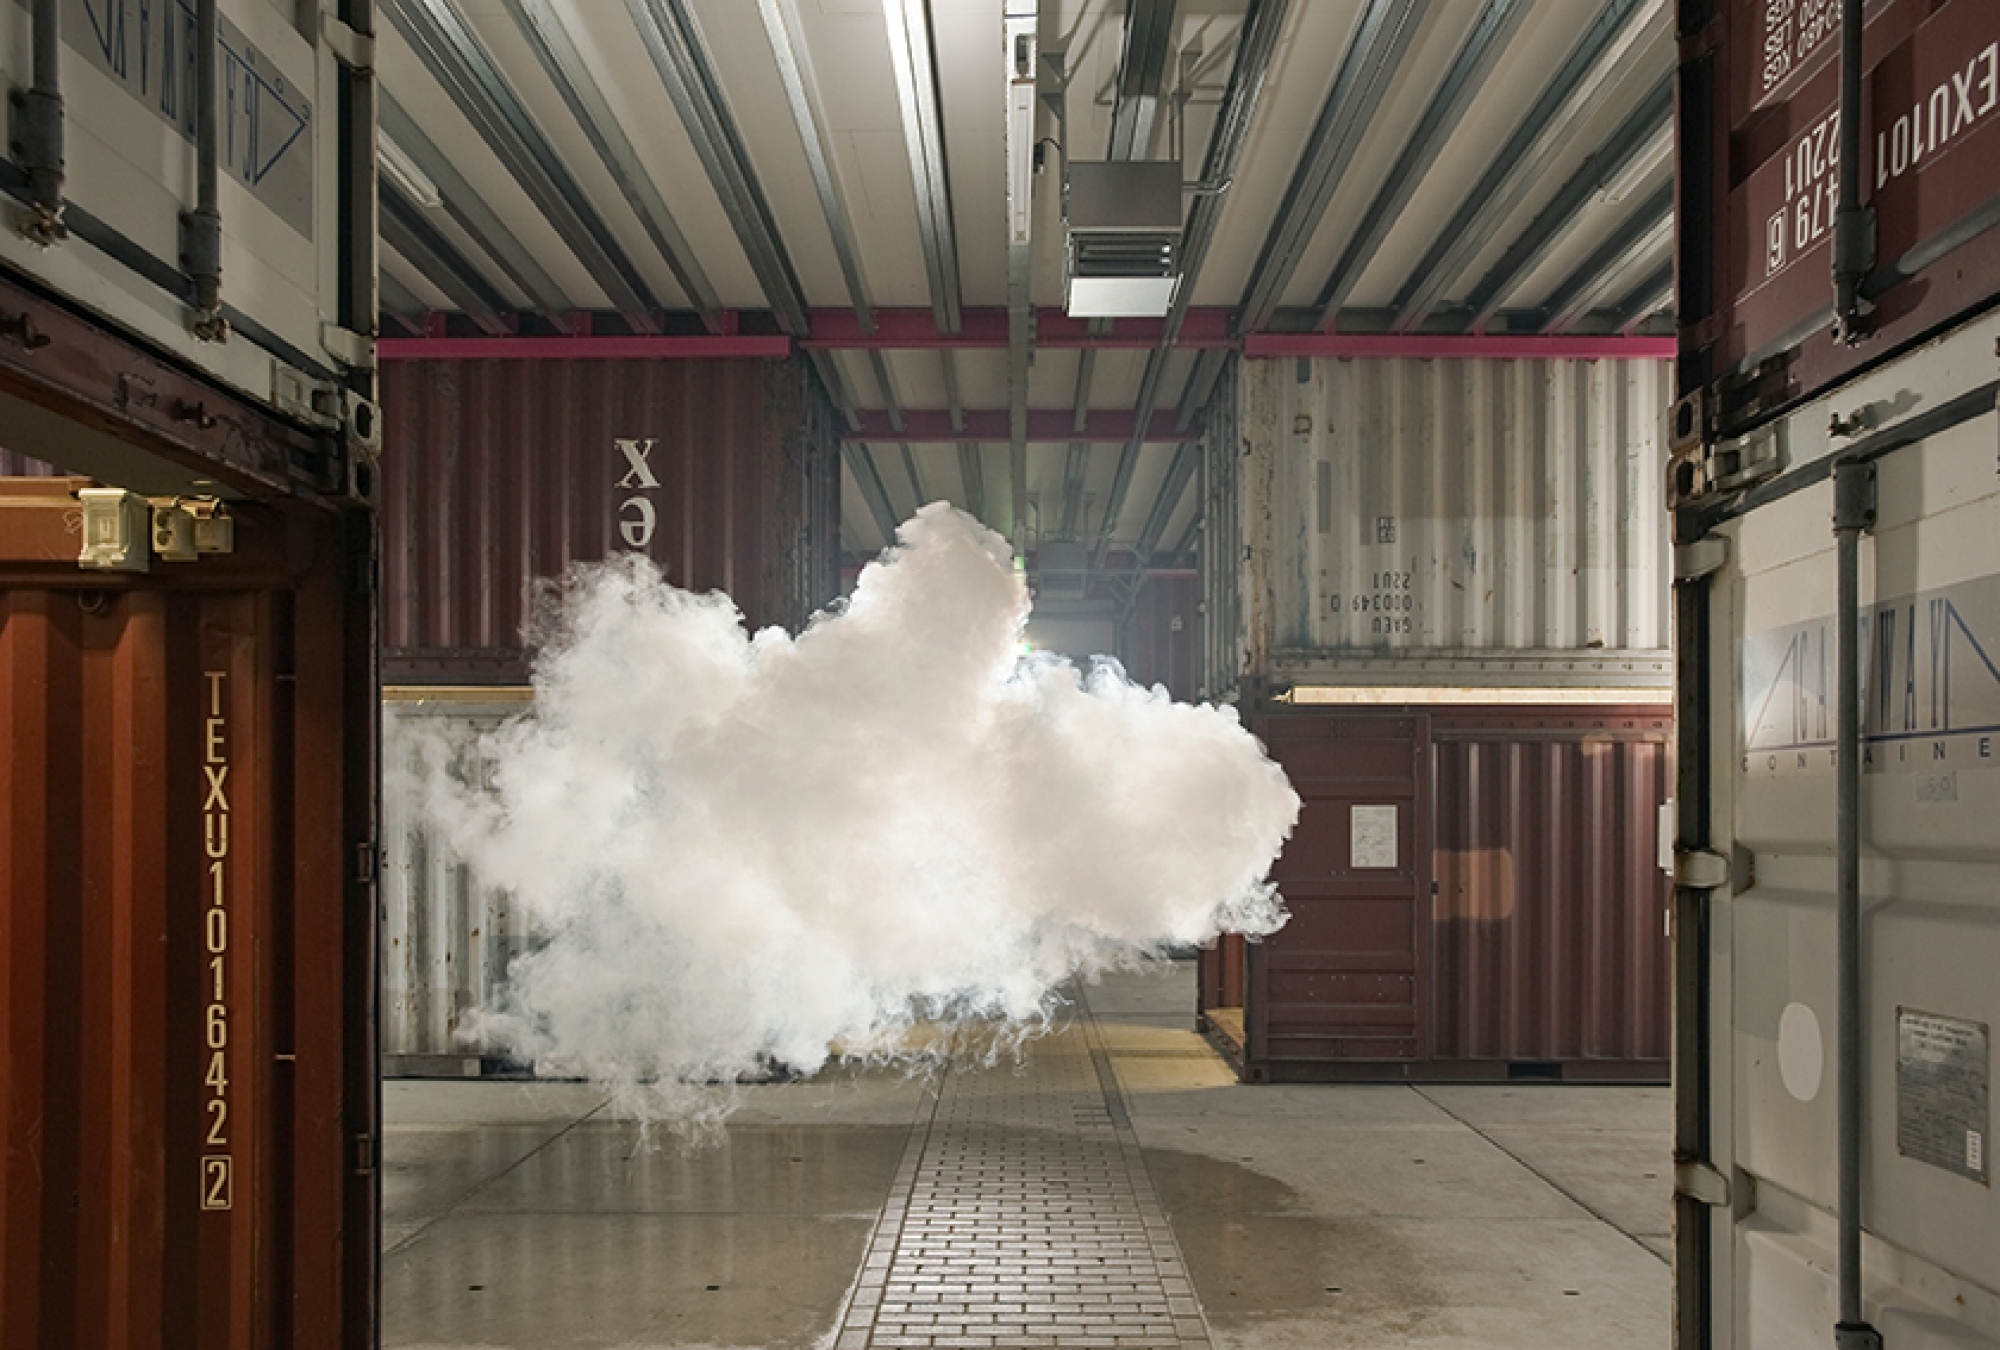 berndnaut-smilde-indoor-clouds-11